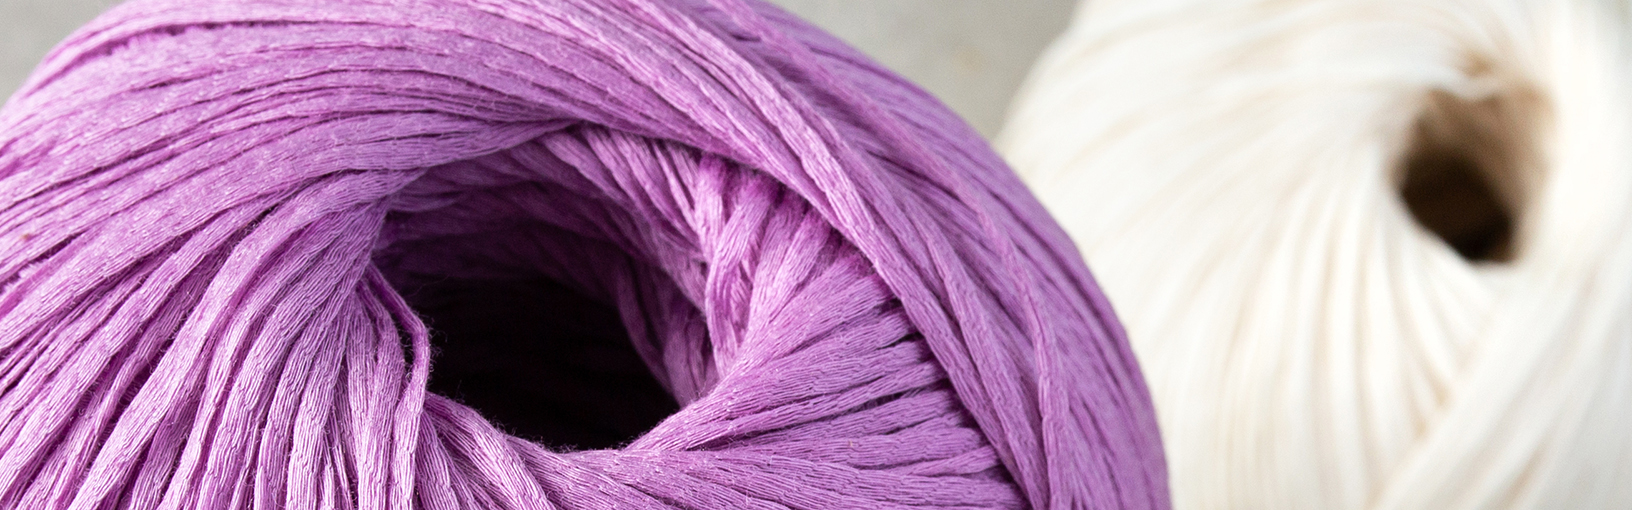 Hilos de alta calidad para tejer, crochet y fieltro Hilos Lana Grossa | Novedades